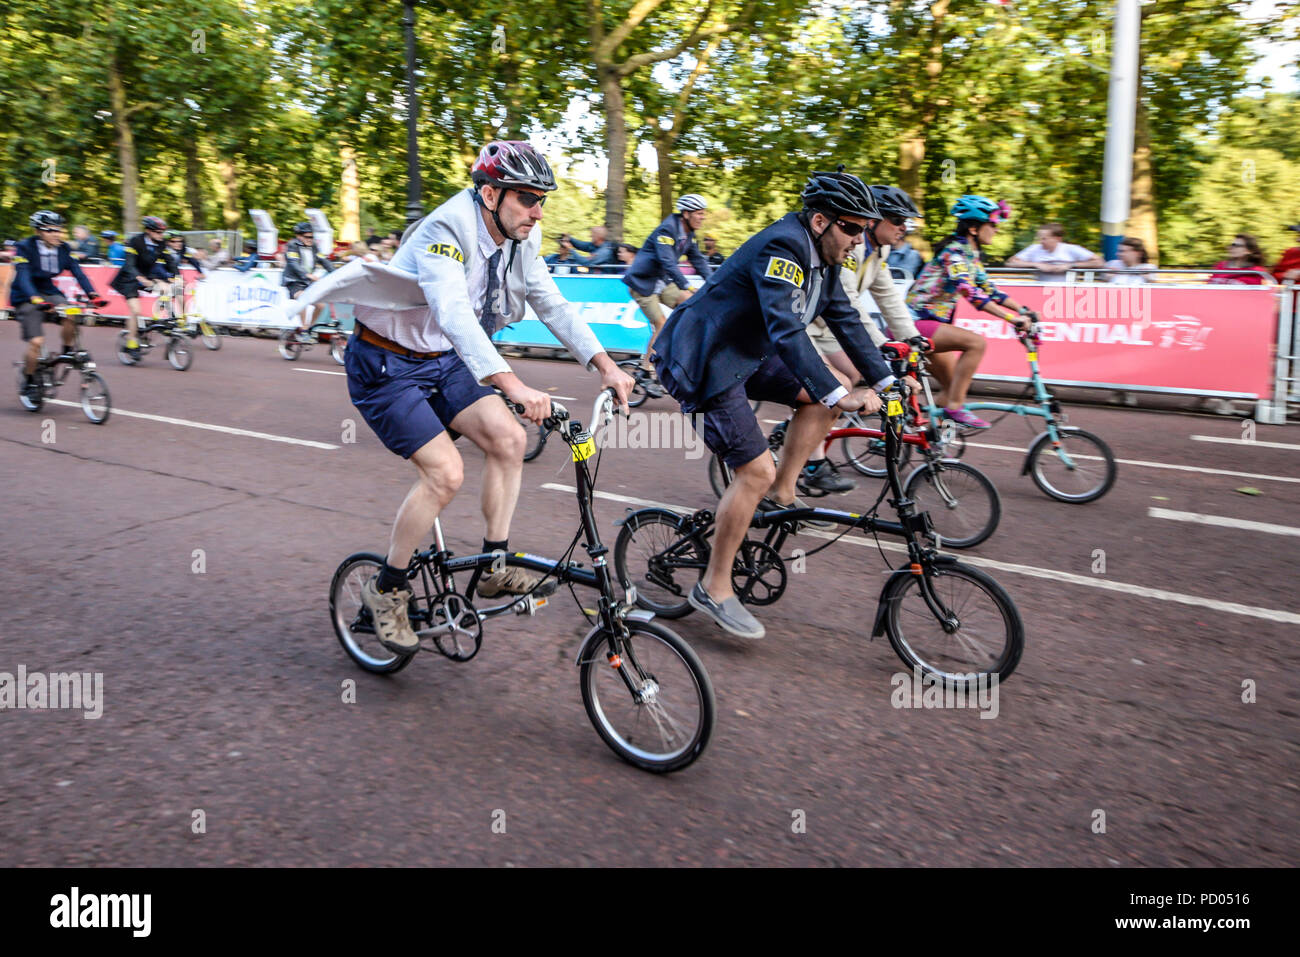 Championnat du Monde de vélo Brompton Prudential RideLondon final au cours de l'événement du cycle dans le Mall, Londres, Royaume-Uni. Brompton vélo pliant, vélo, course cycliste Banque D'Images